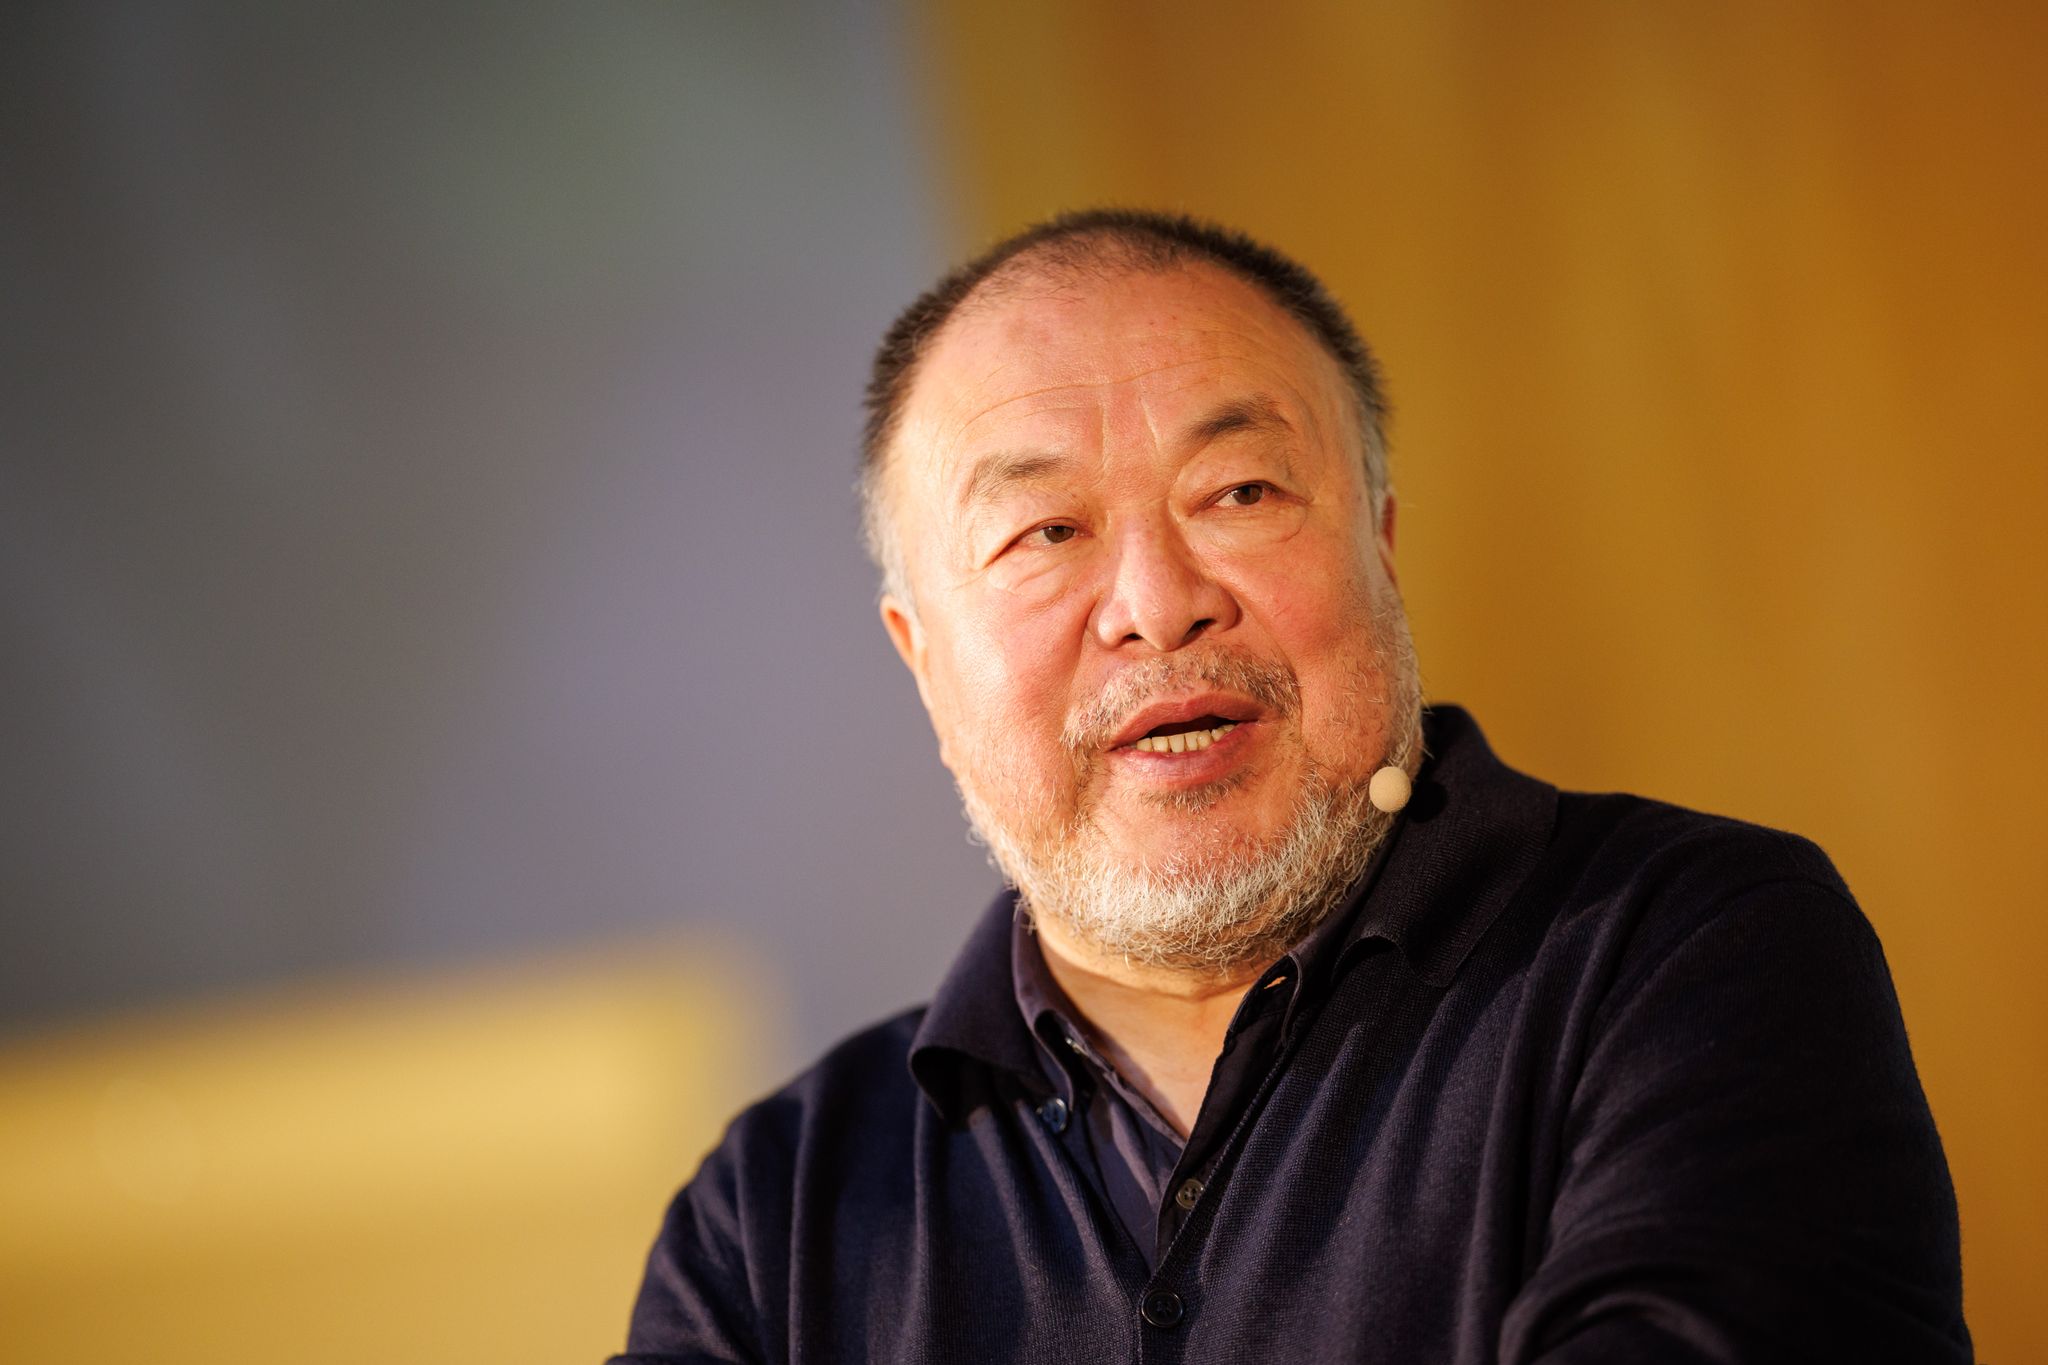 Der chinesische Künstler Ai Weiwei wurde nach einer Äußerung zum Gaza-Krieg heftig kritisiert.